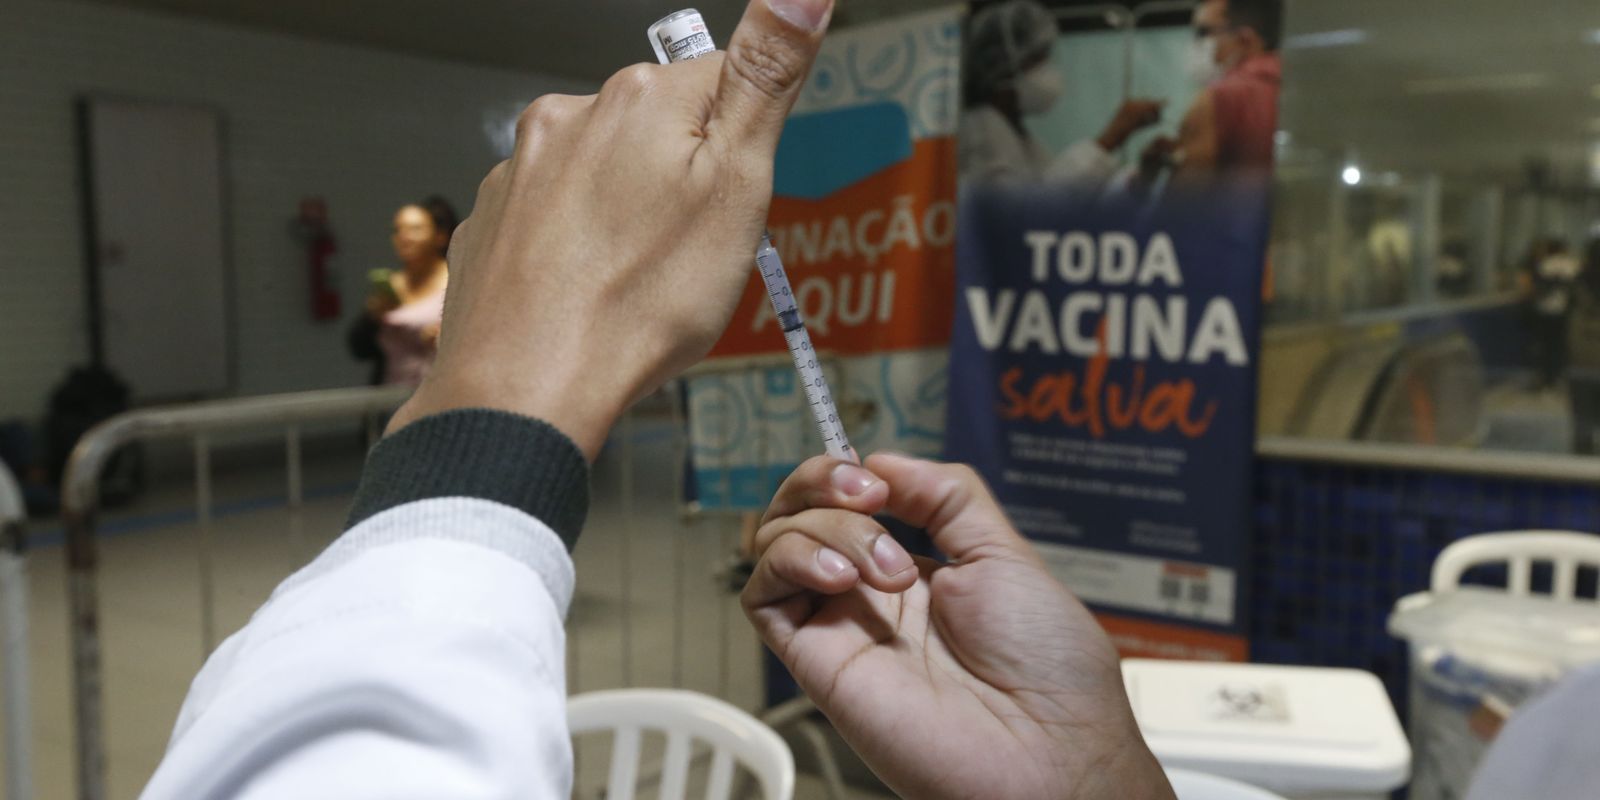 Saúde quer vacinar 6,6 milhões de pessoas contra a gripe no Norte